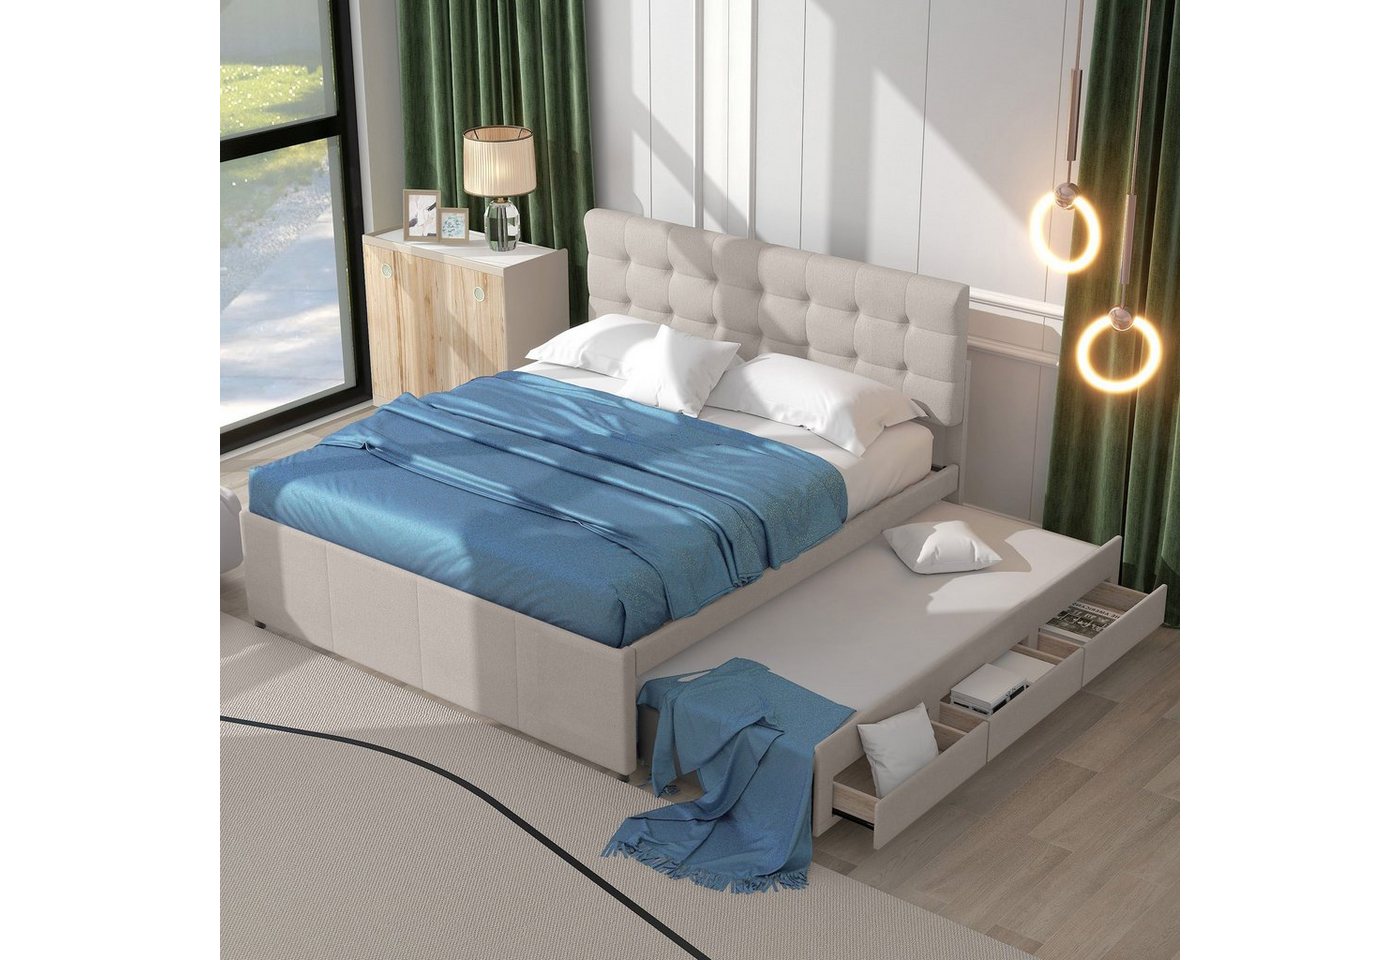 Ulife Polsterbett Doppelbett ausziehbares Bett Familienbett, Verstellbares Kopfteil, mit drei Schubladen, 140x200cm von Ulife